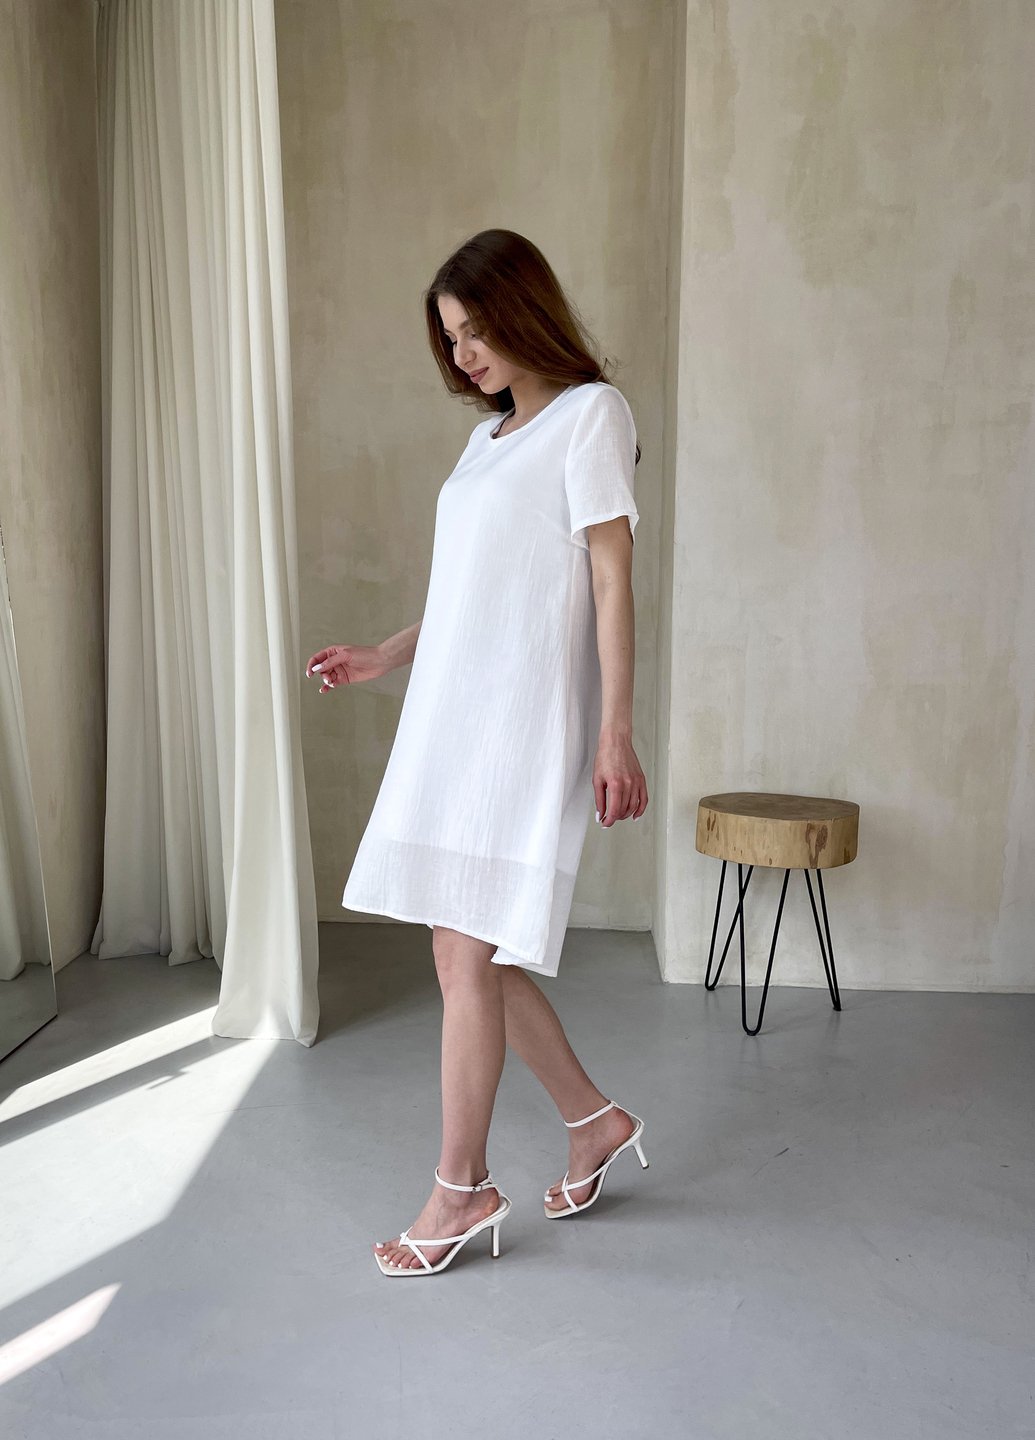 Купить Женское платье до колена однотонное с коротким рукавом из льна белое Merlini Престо 700000183, размер 42-44 (S-M) в интернет-магазине